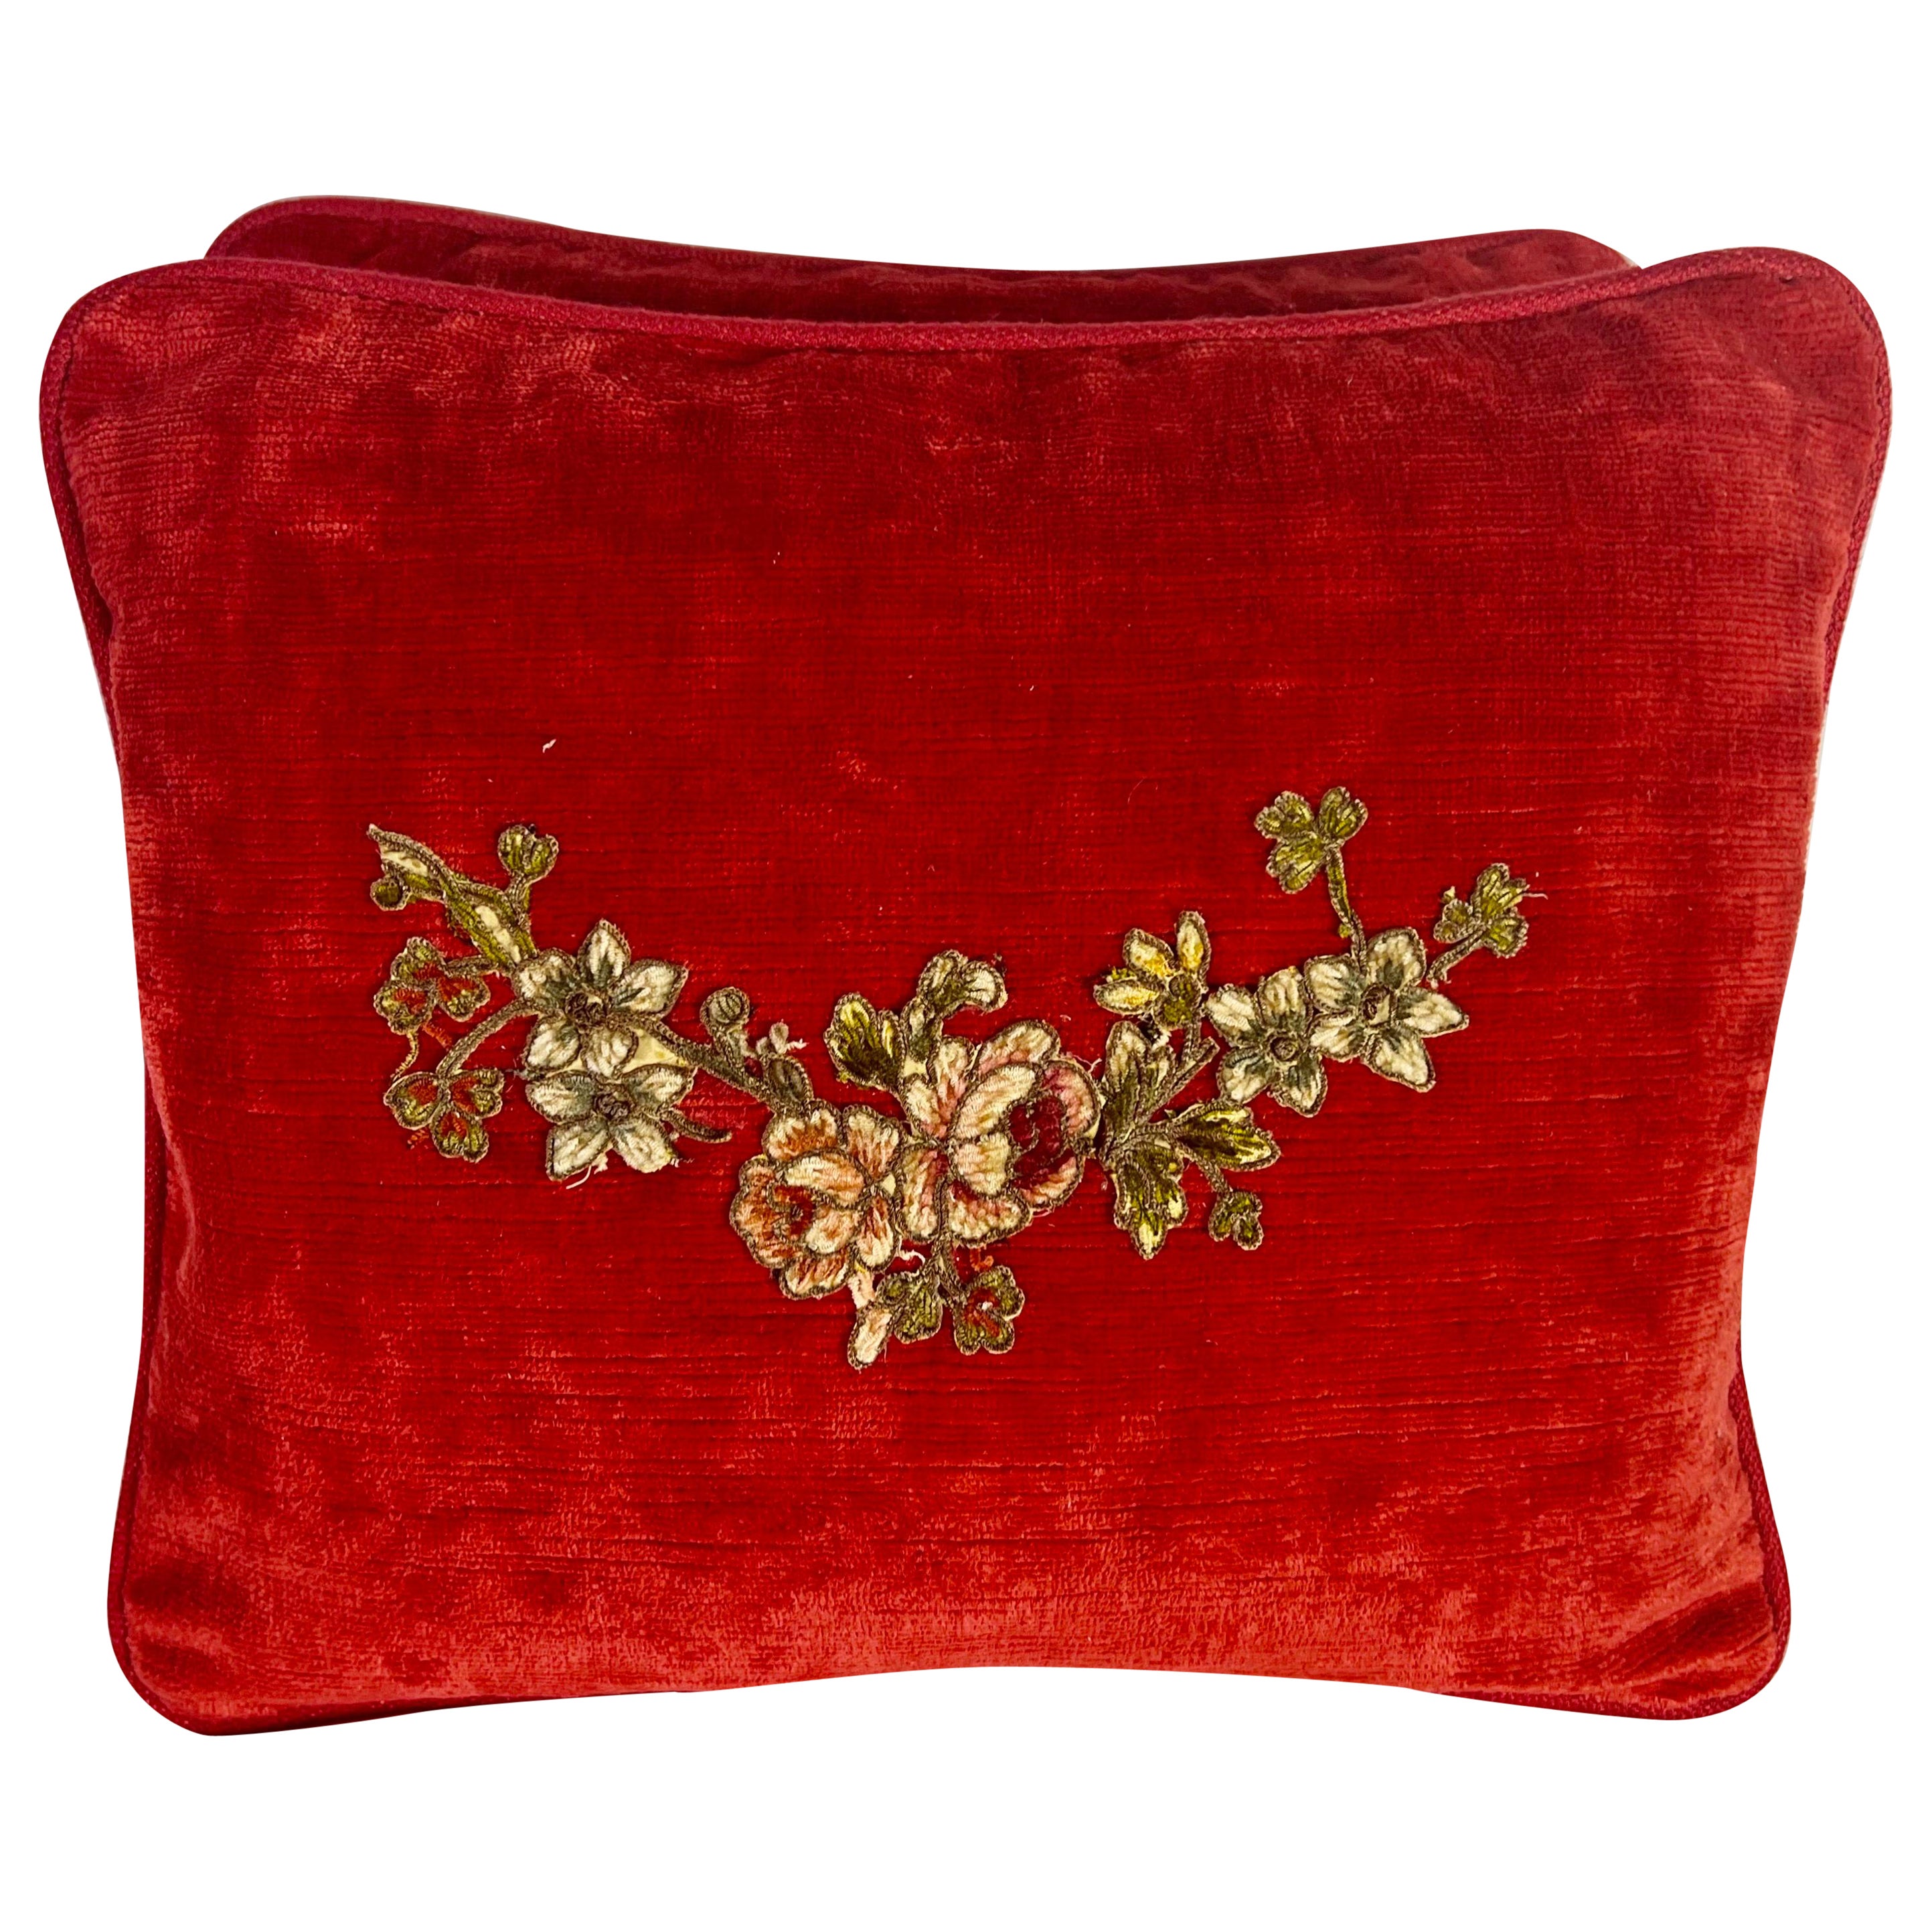 Pair of Custom Appliqué Red Velvet Pillows For Sale